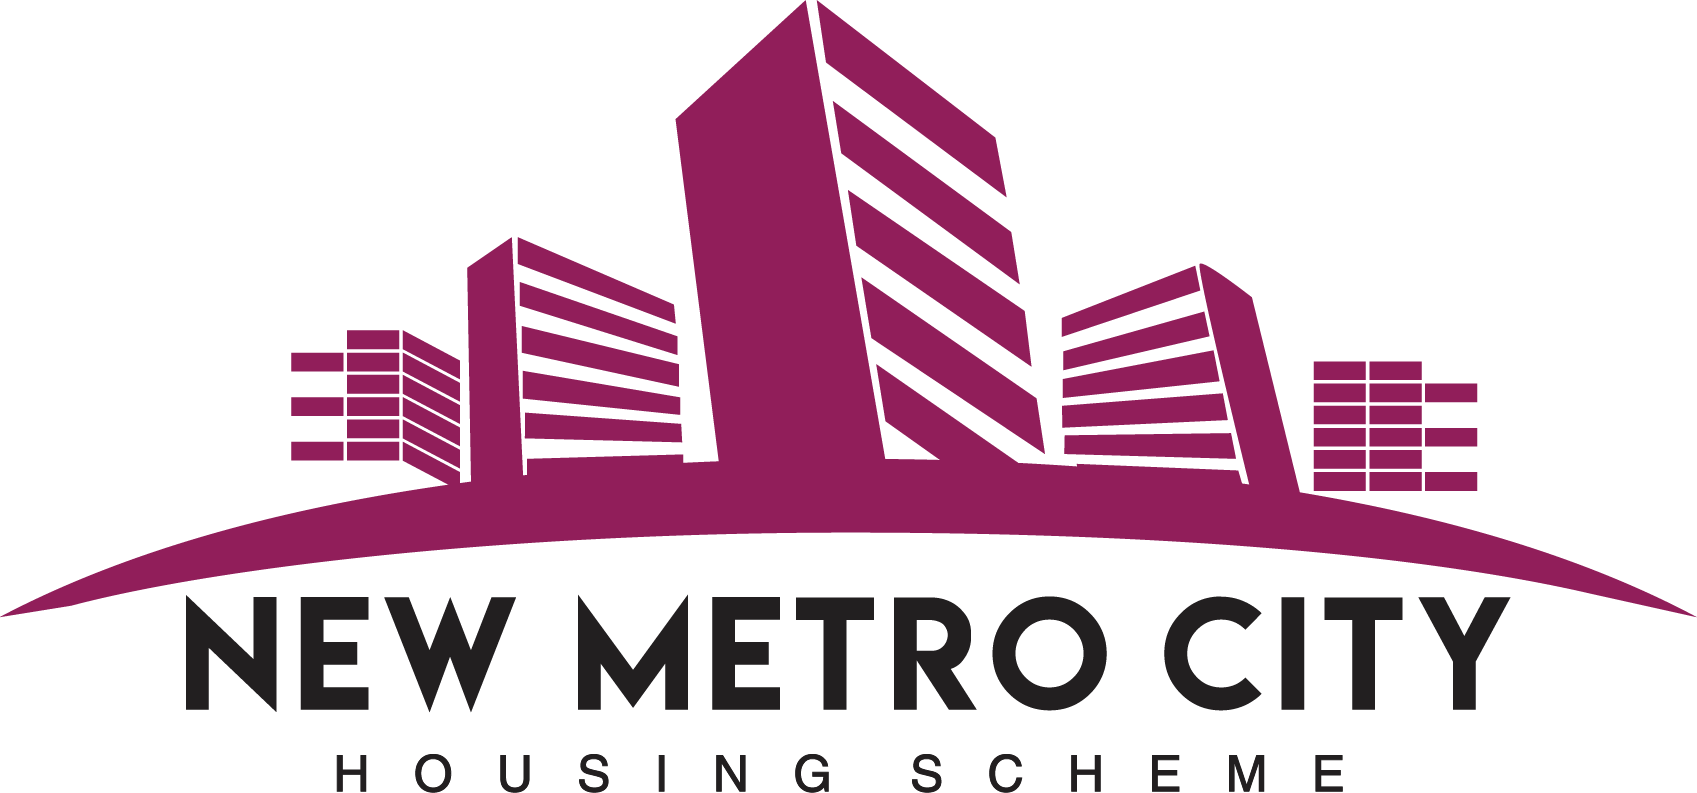 Логотип Сити. Metro City. New City лого. СЭЛТ Сити логотип. Metro life city